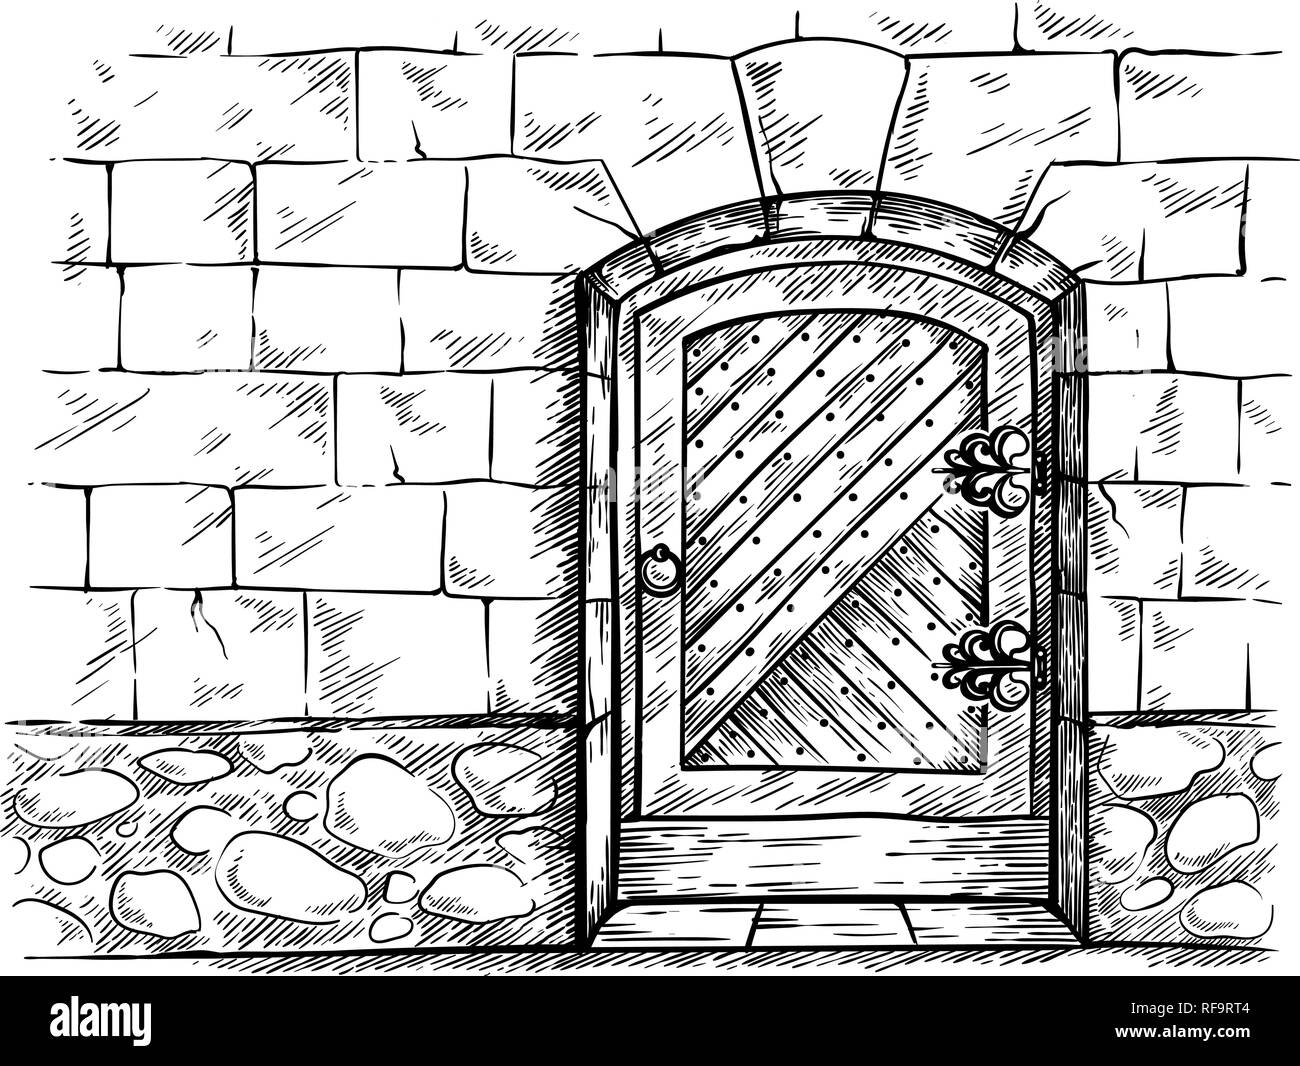 Croquis dibujado a mano antigua puerta de madera arqueada en STONE WALL ilustración vectorial Ilustración del Vector